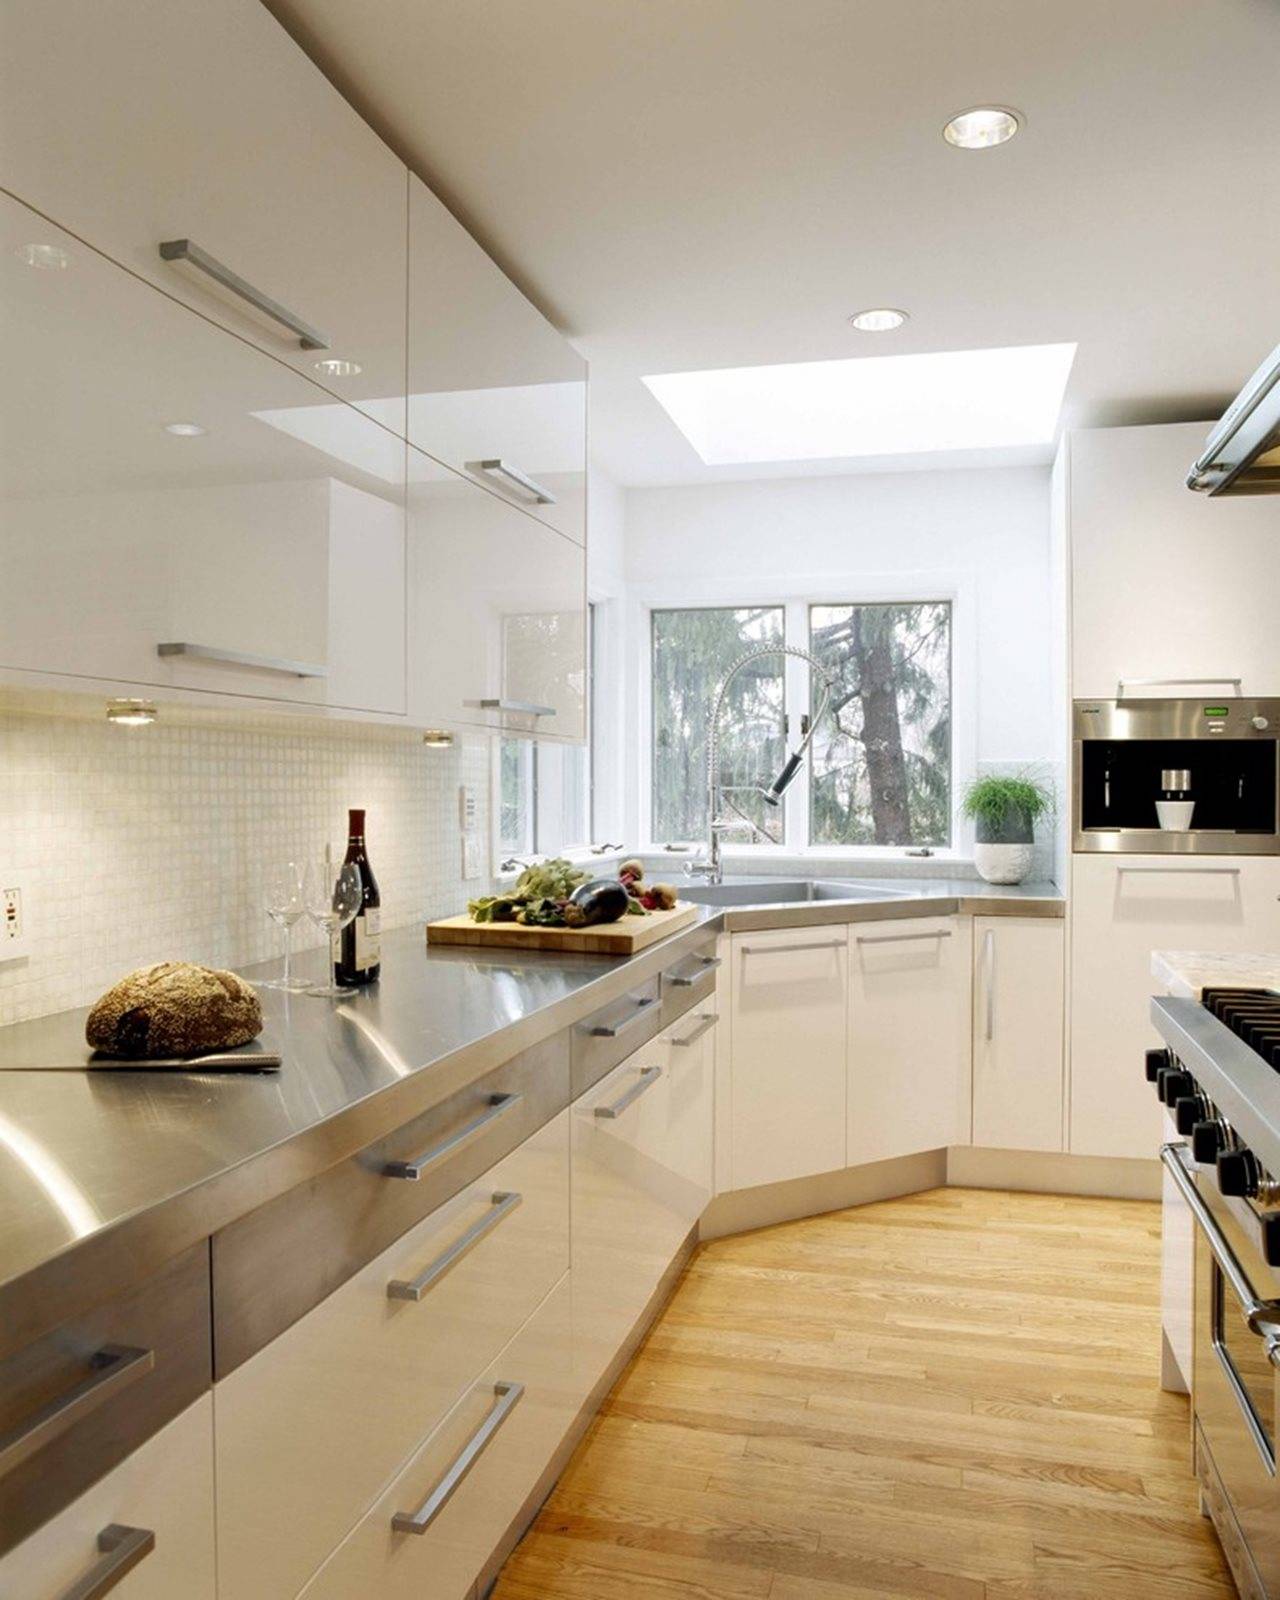 Дизайн кухни в квартире - какие зоны должны присутствовать, цветовая гамма, как правильно выбрать мебель и кухонный гарнитур, стиль интерьера